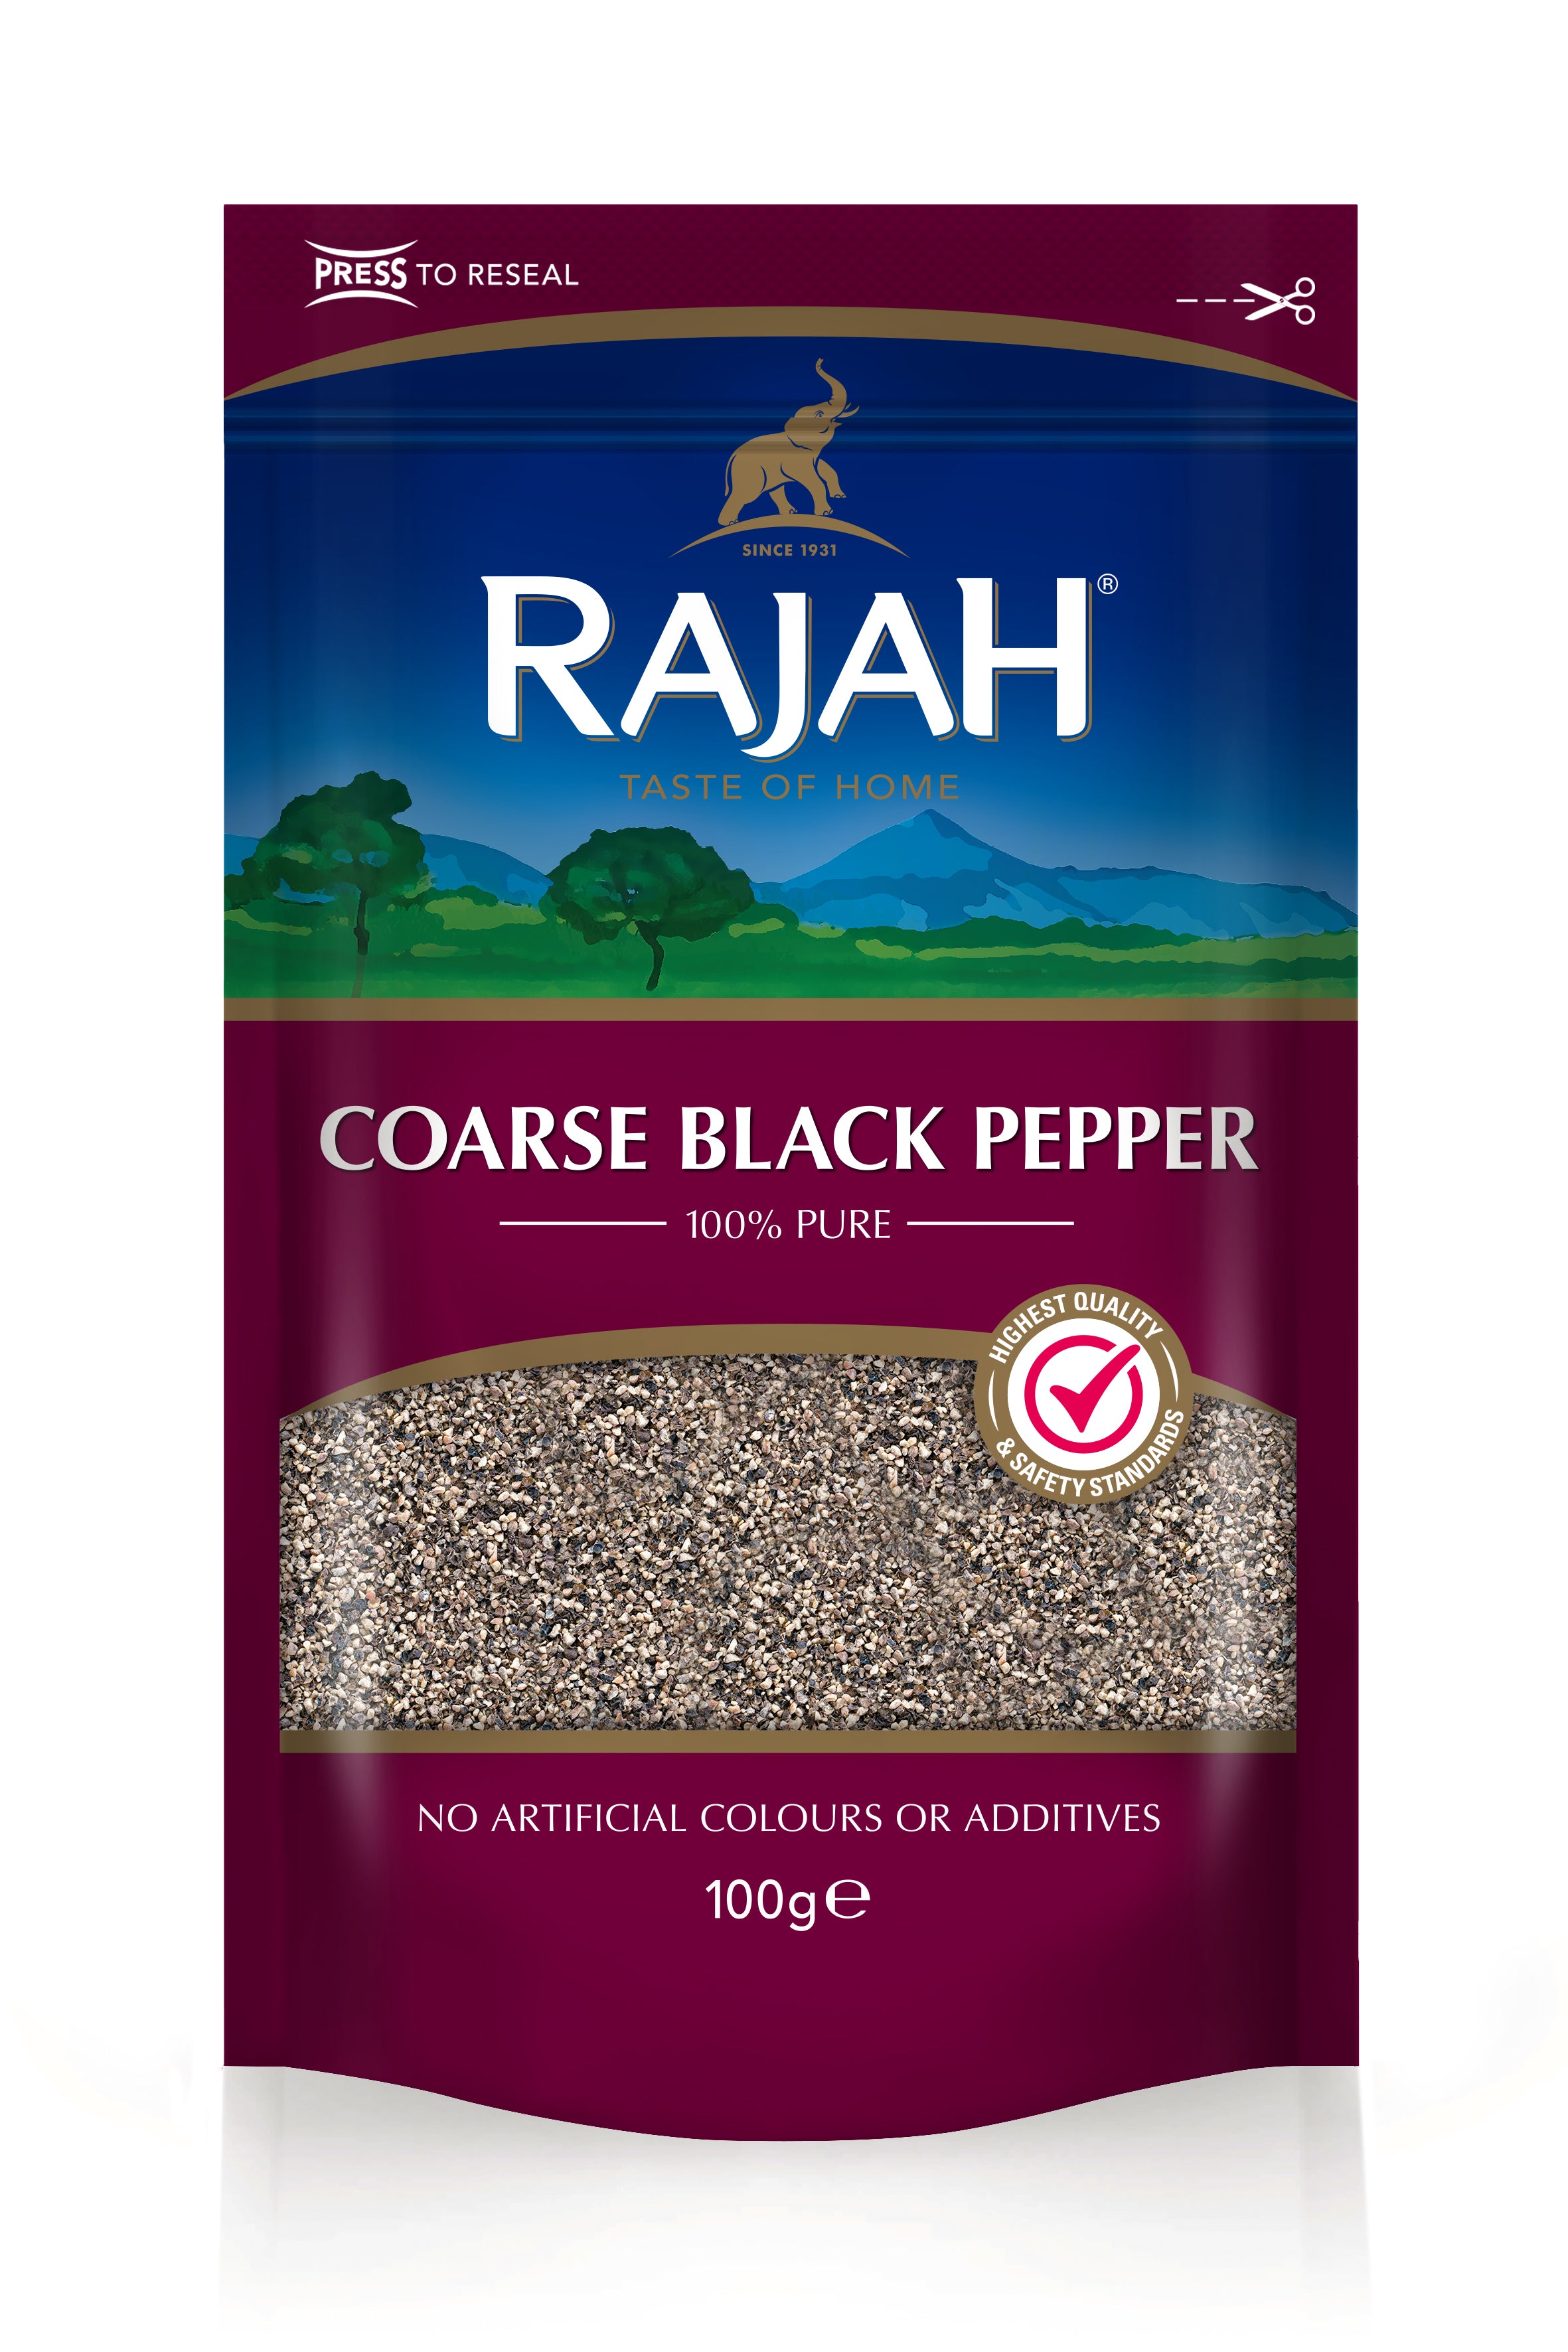 Rajah Course Black Pepper - SaveCo Cash & Carry